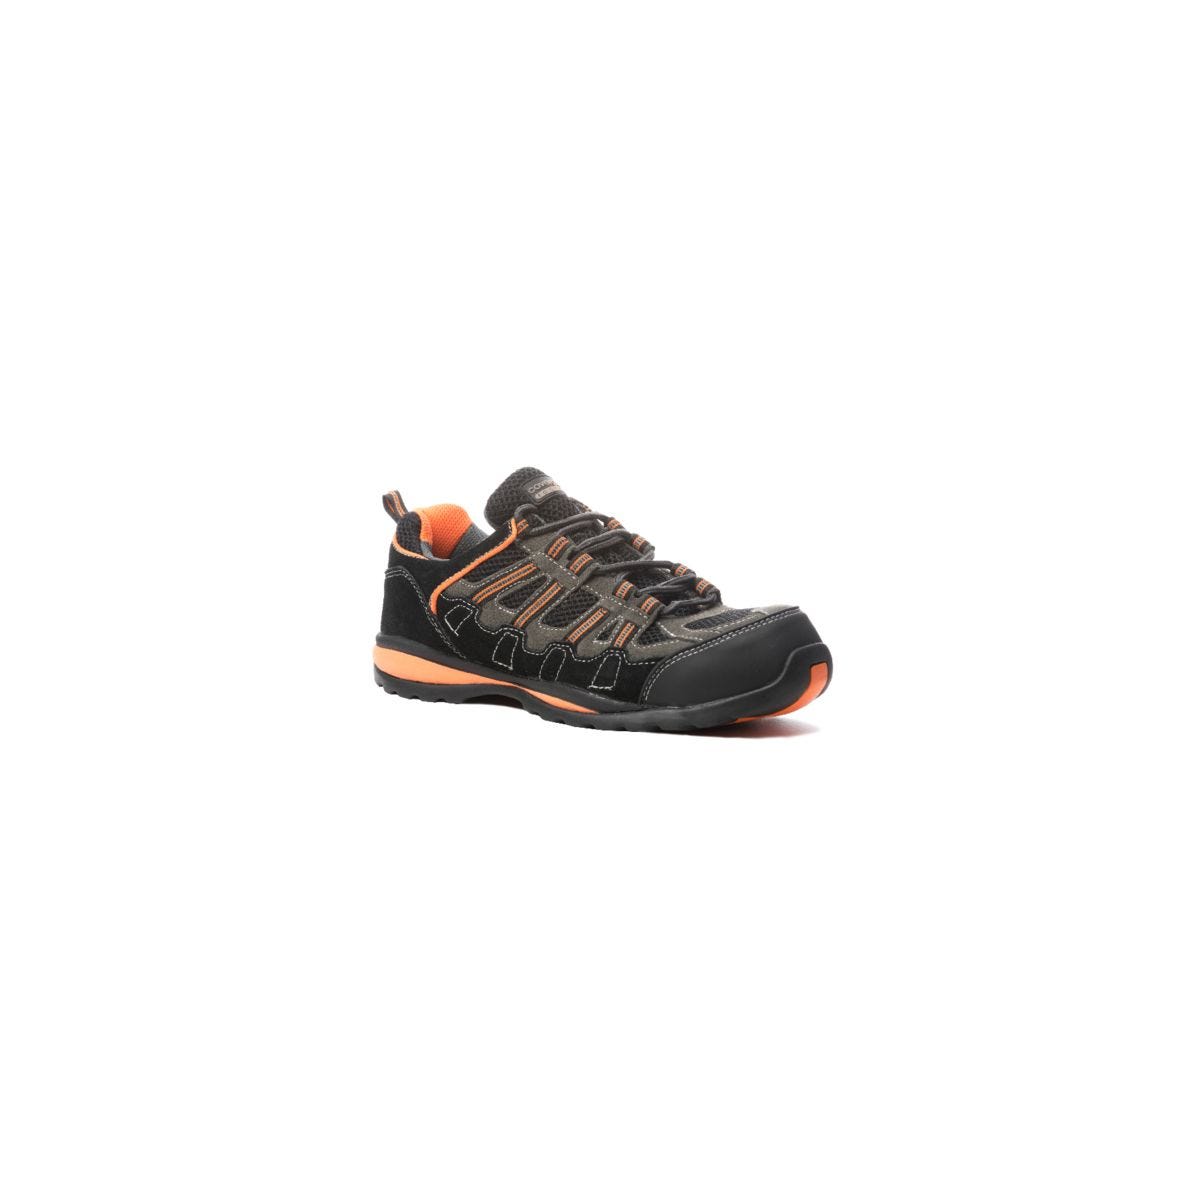 Chaussures de sécurité HELVITE S1P composite noir/orange - COVERGUARD - Taille 41 0